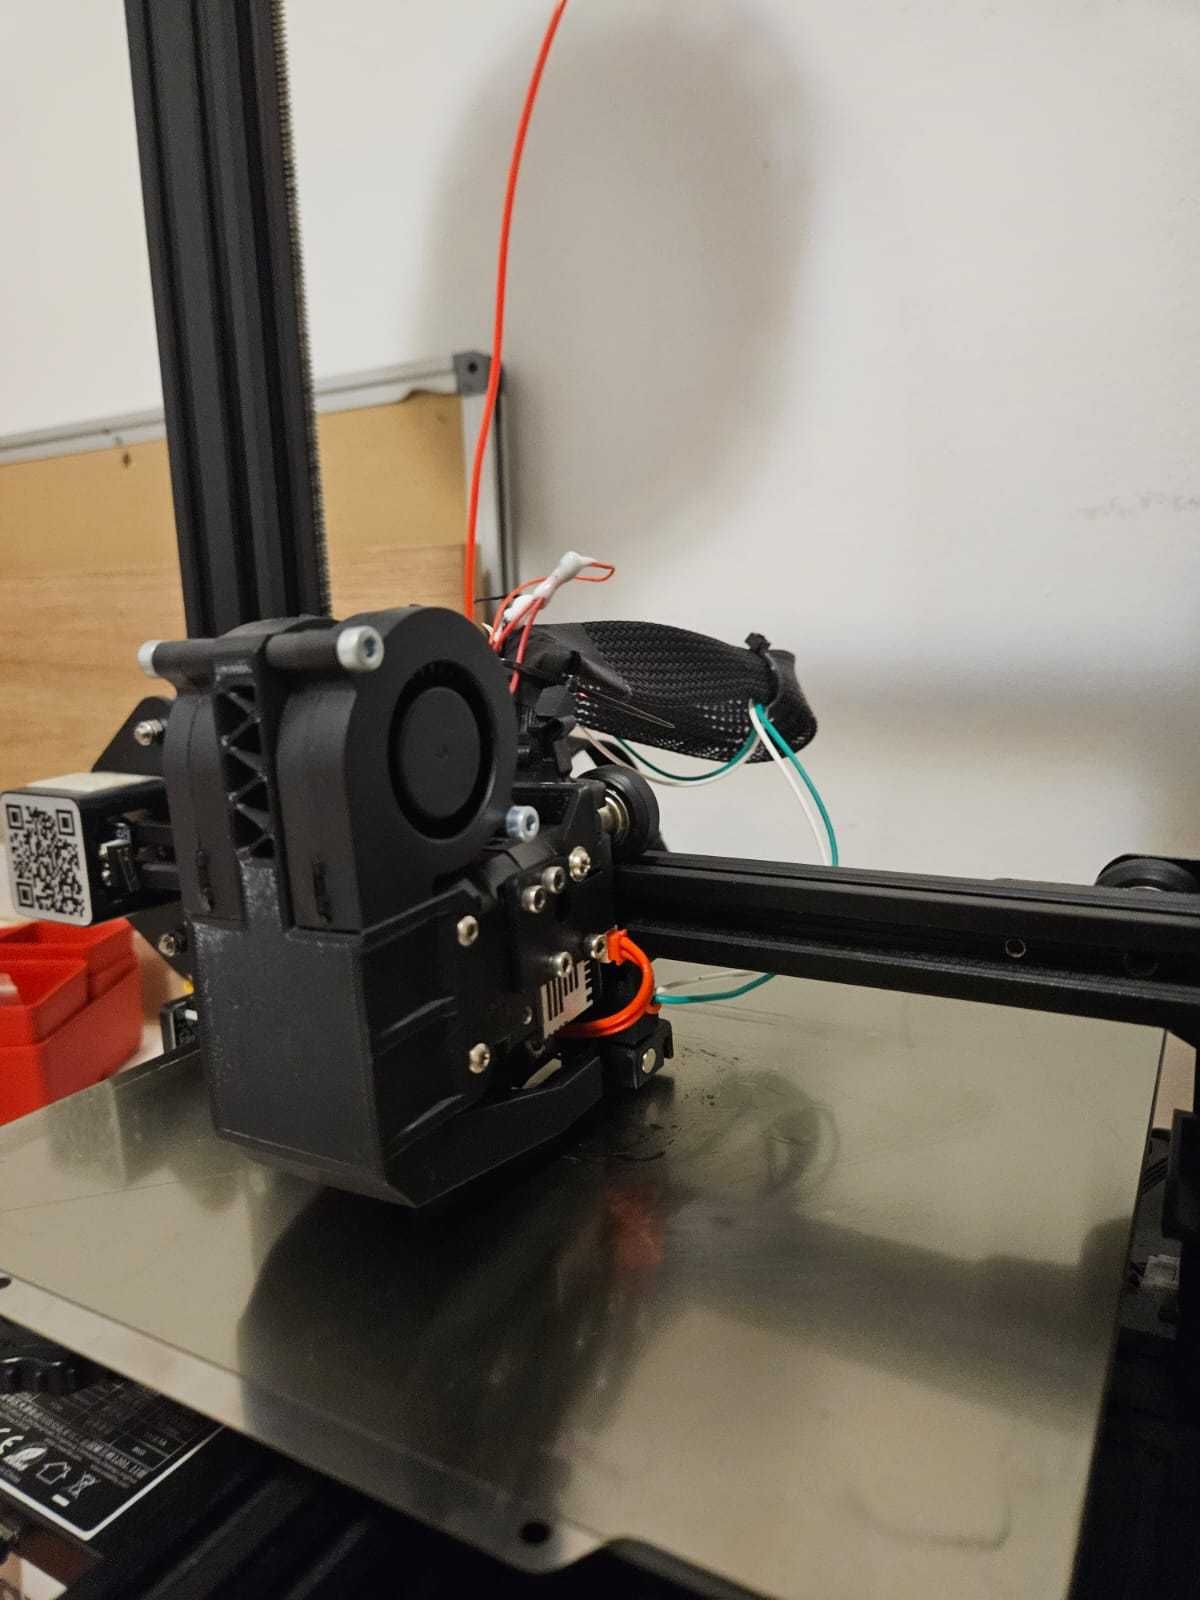 Imprimanta 3D Ender 3 V2 cu upgrade-uri, klipper